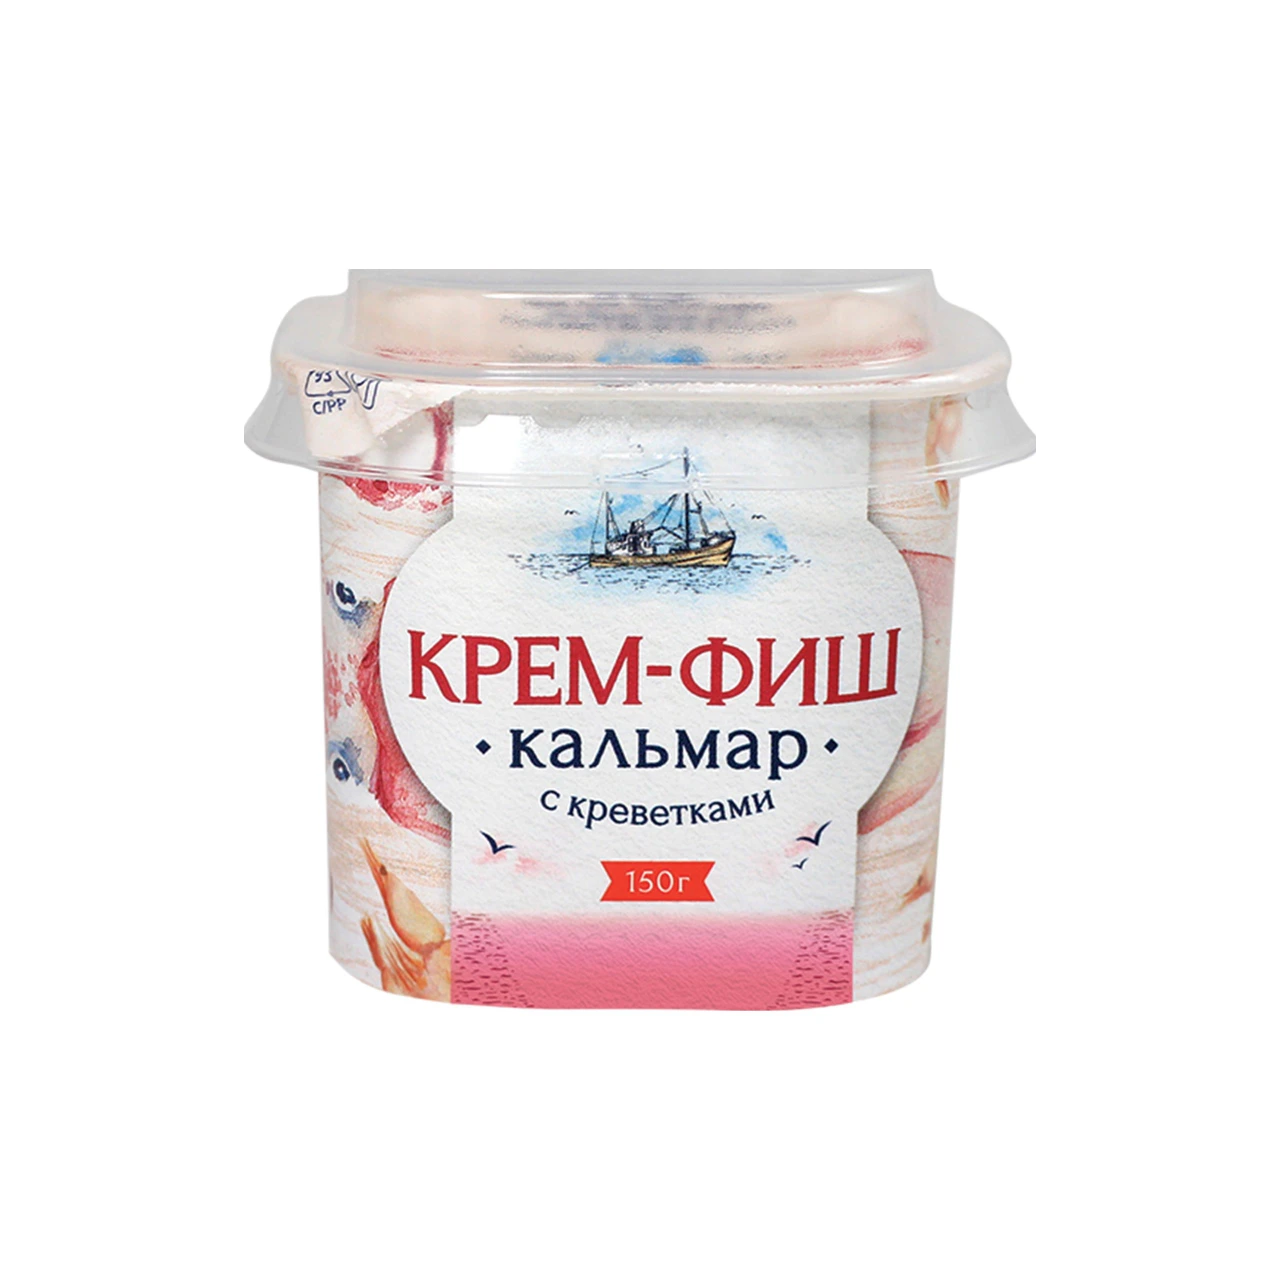 Паста Европром крем- фиш кальмар/креветка 150 г